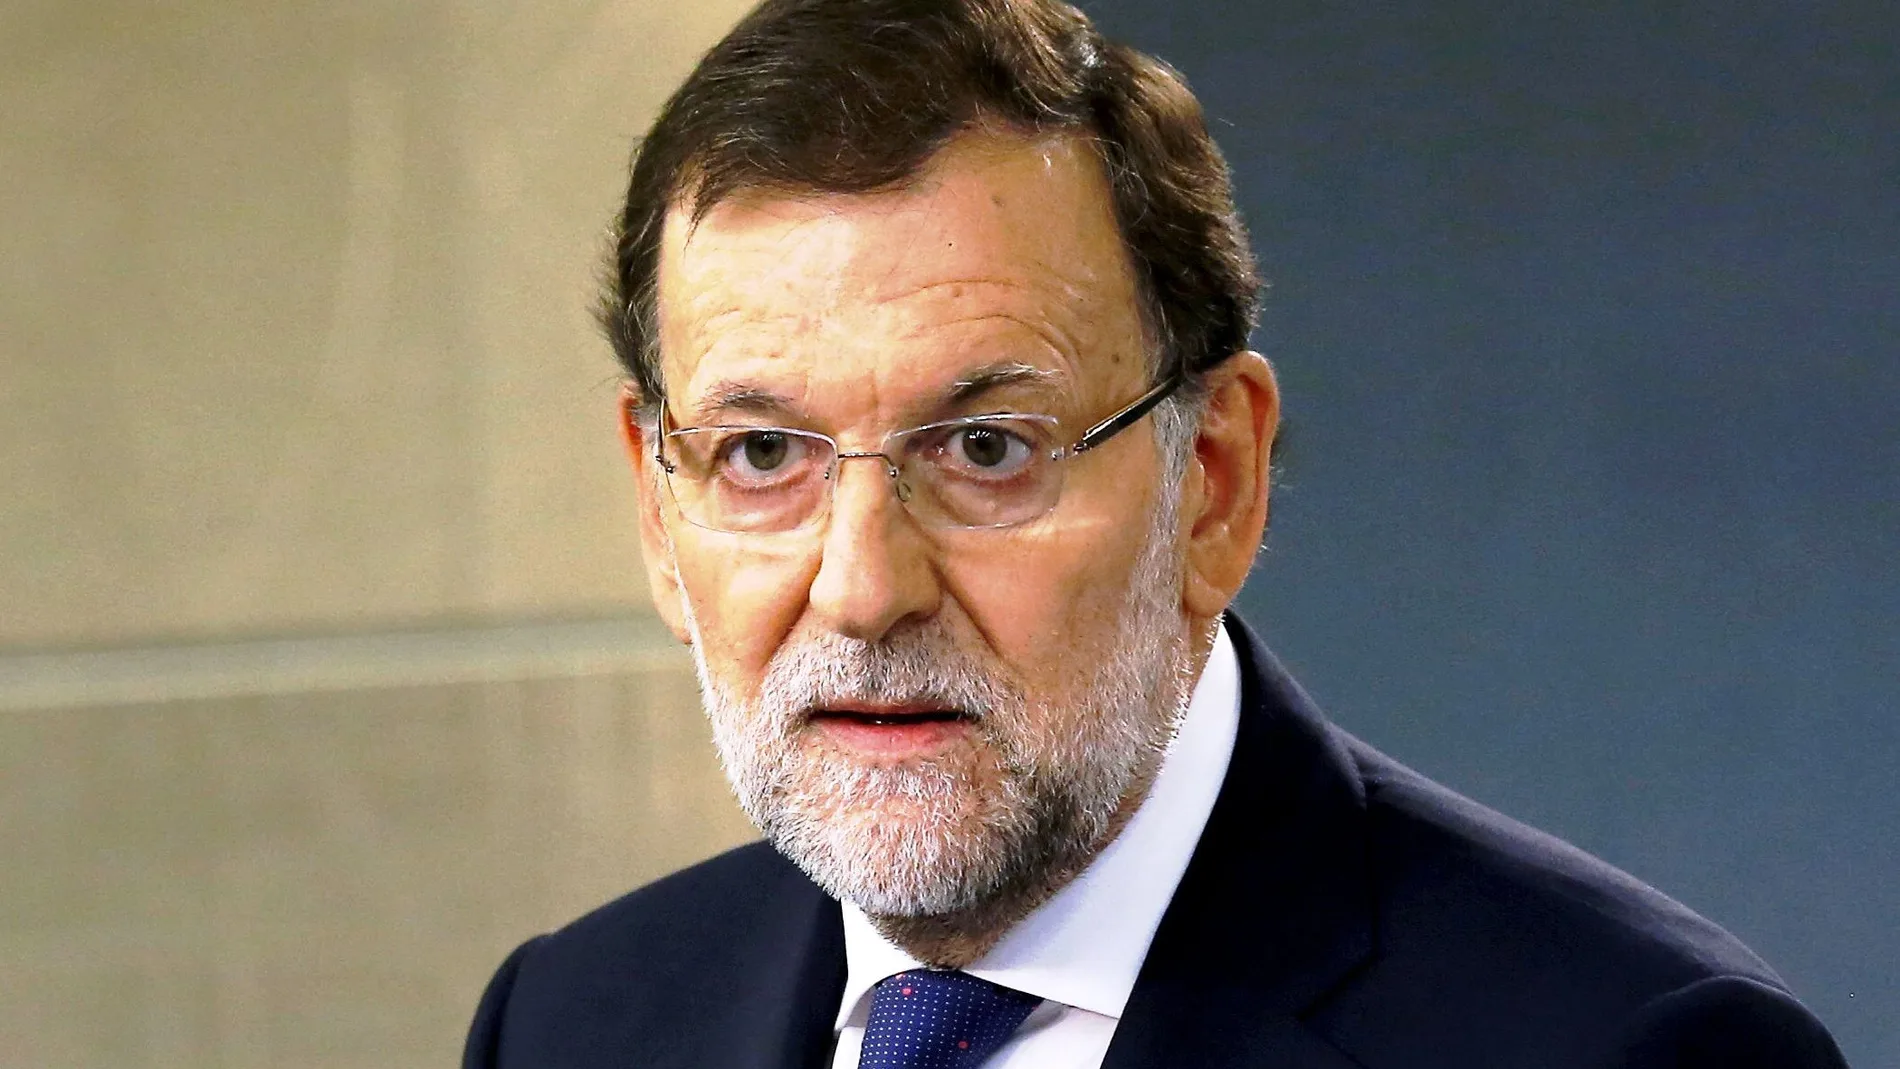  El presidente del Gobierno, Mariano Rajoy, durante su comparecencia